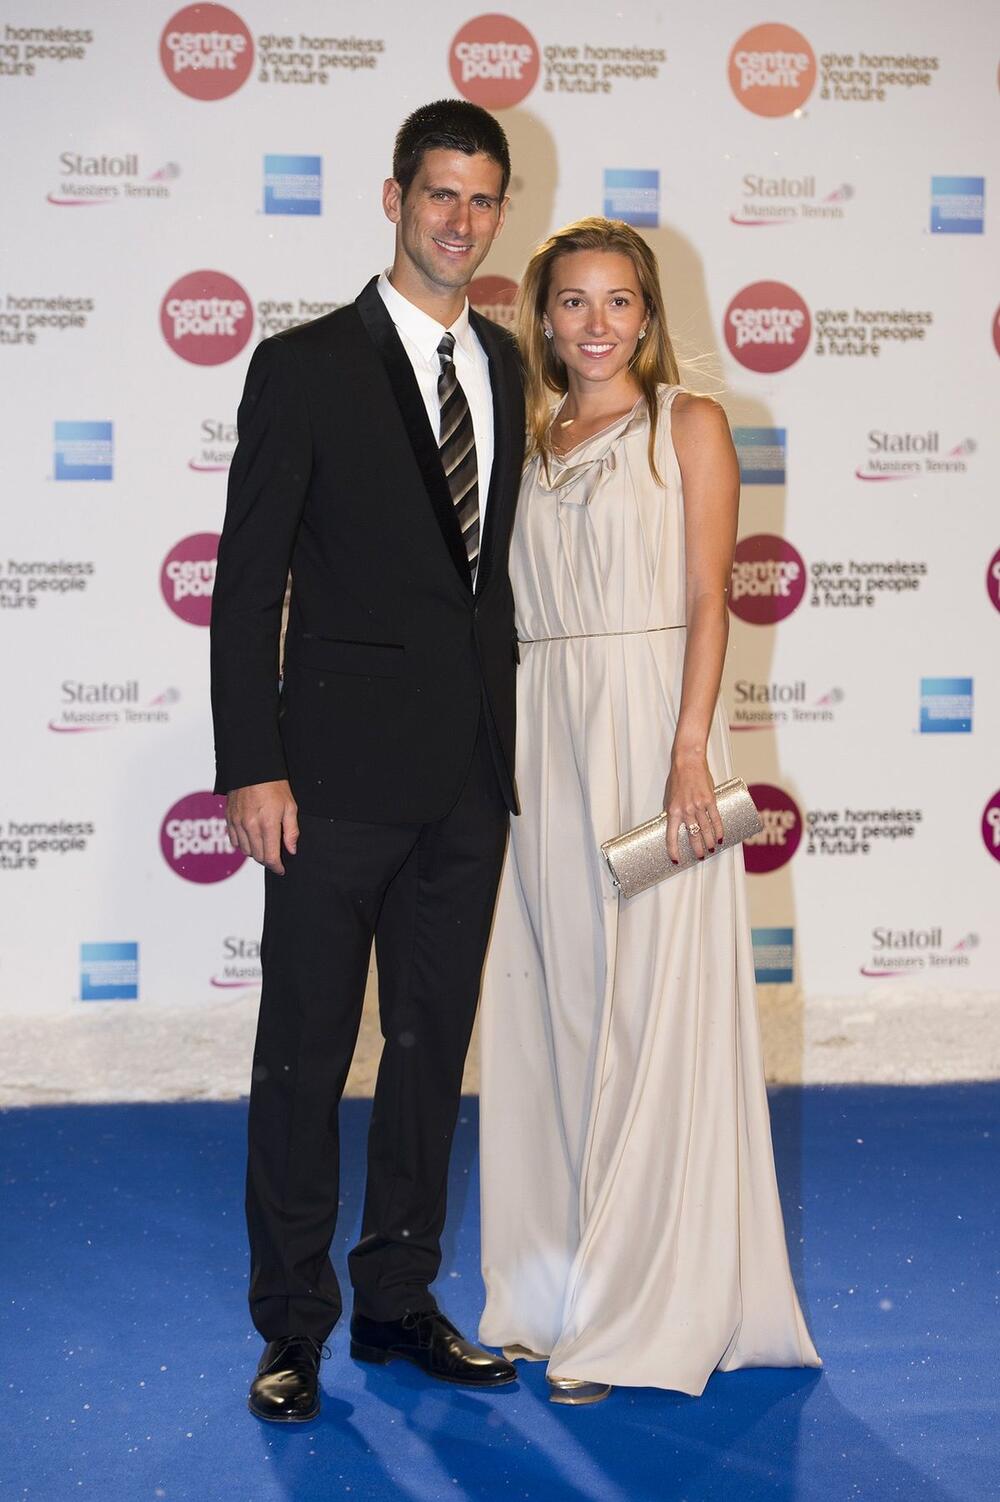 Jelena i Novak Đoković na crvenom tepihu